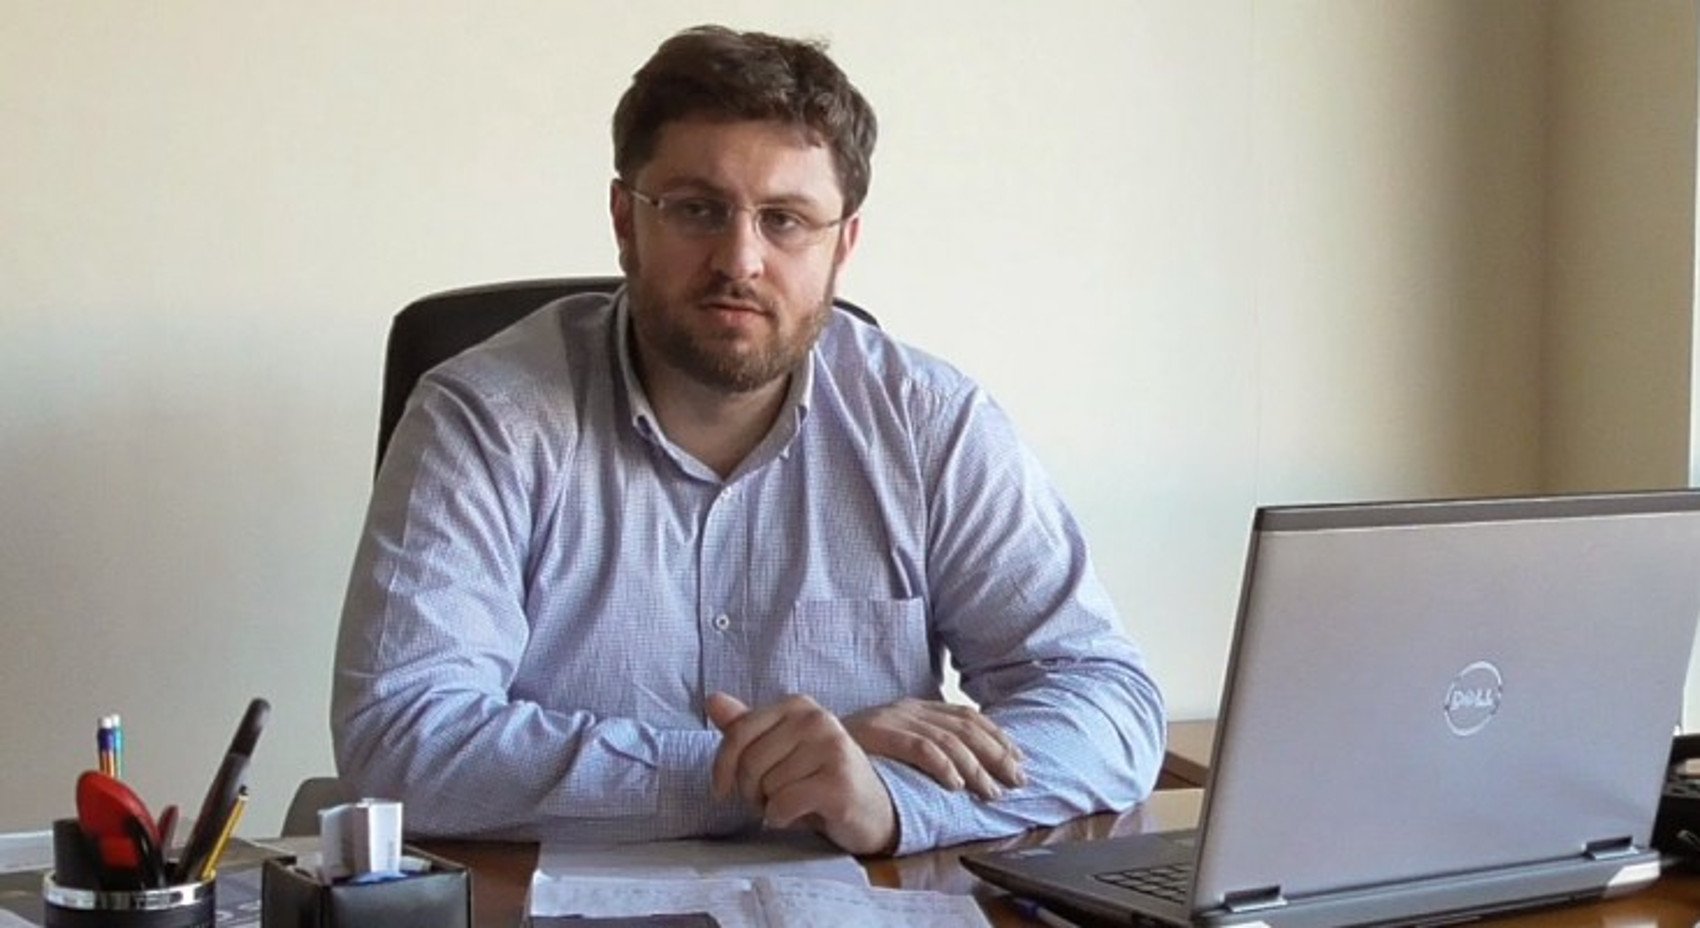 Ζαχαριάδης στο «Νυχτερινό ρεπορτάζ»: Ο Πανούσης μας έχει συνηθίσει σε πιο νηφάλιες ανακοινώσεις